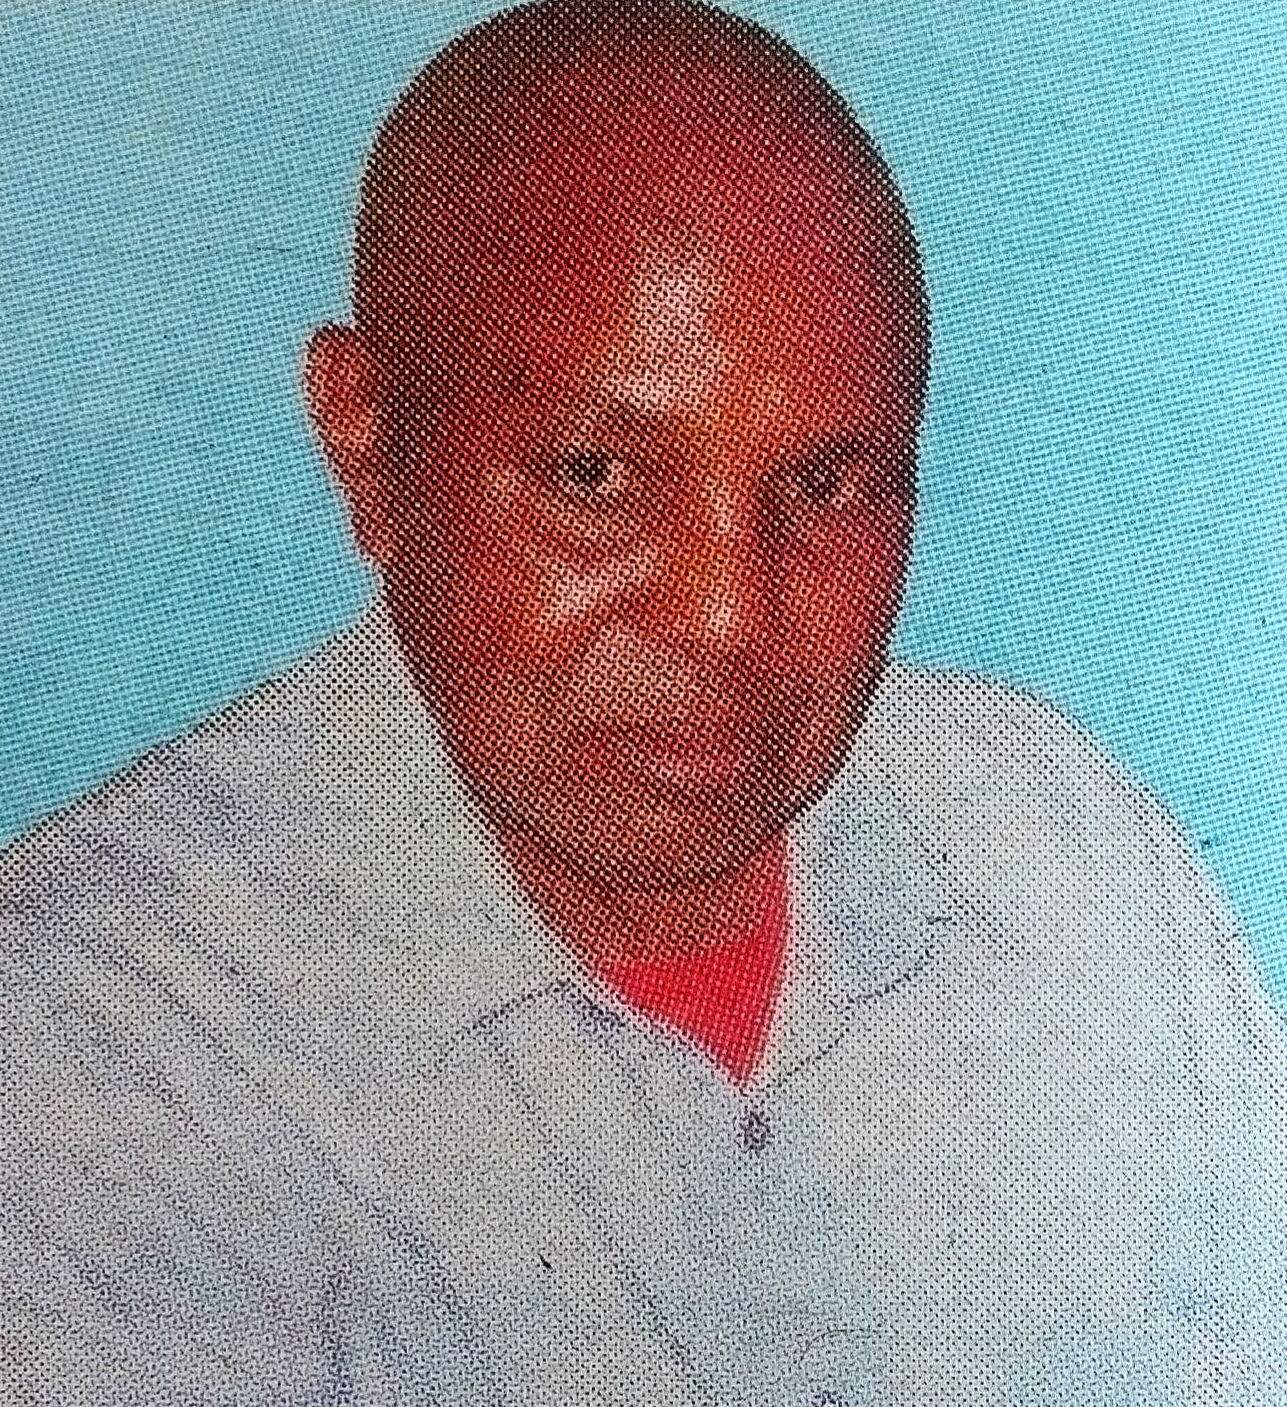 Obituary Image of Charles Munyasya Kilinda